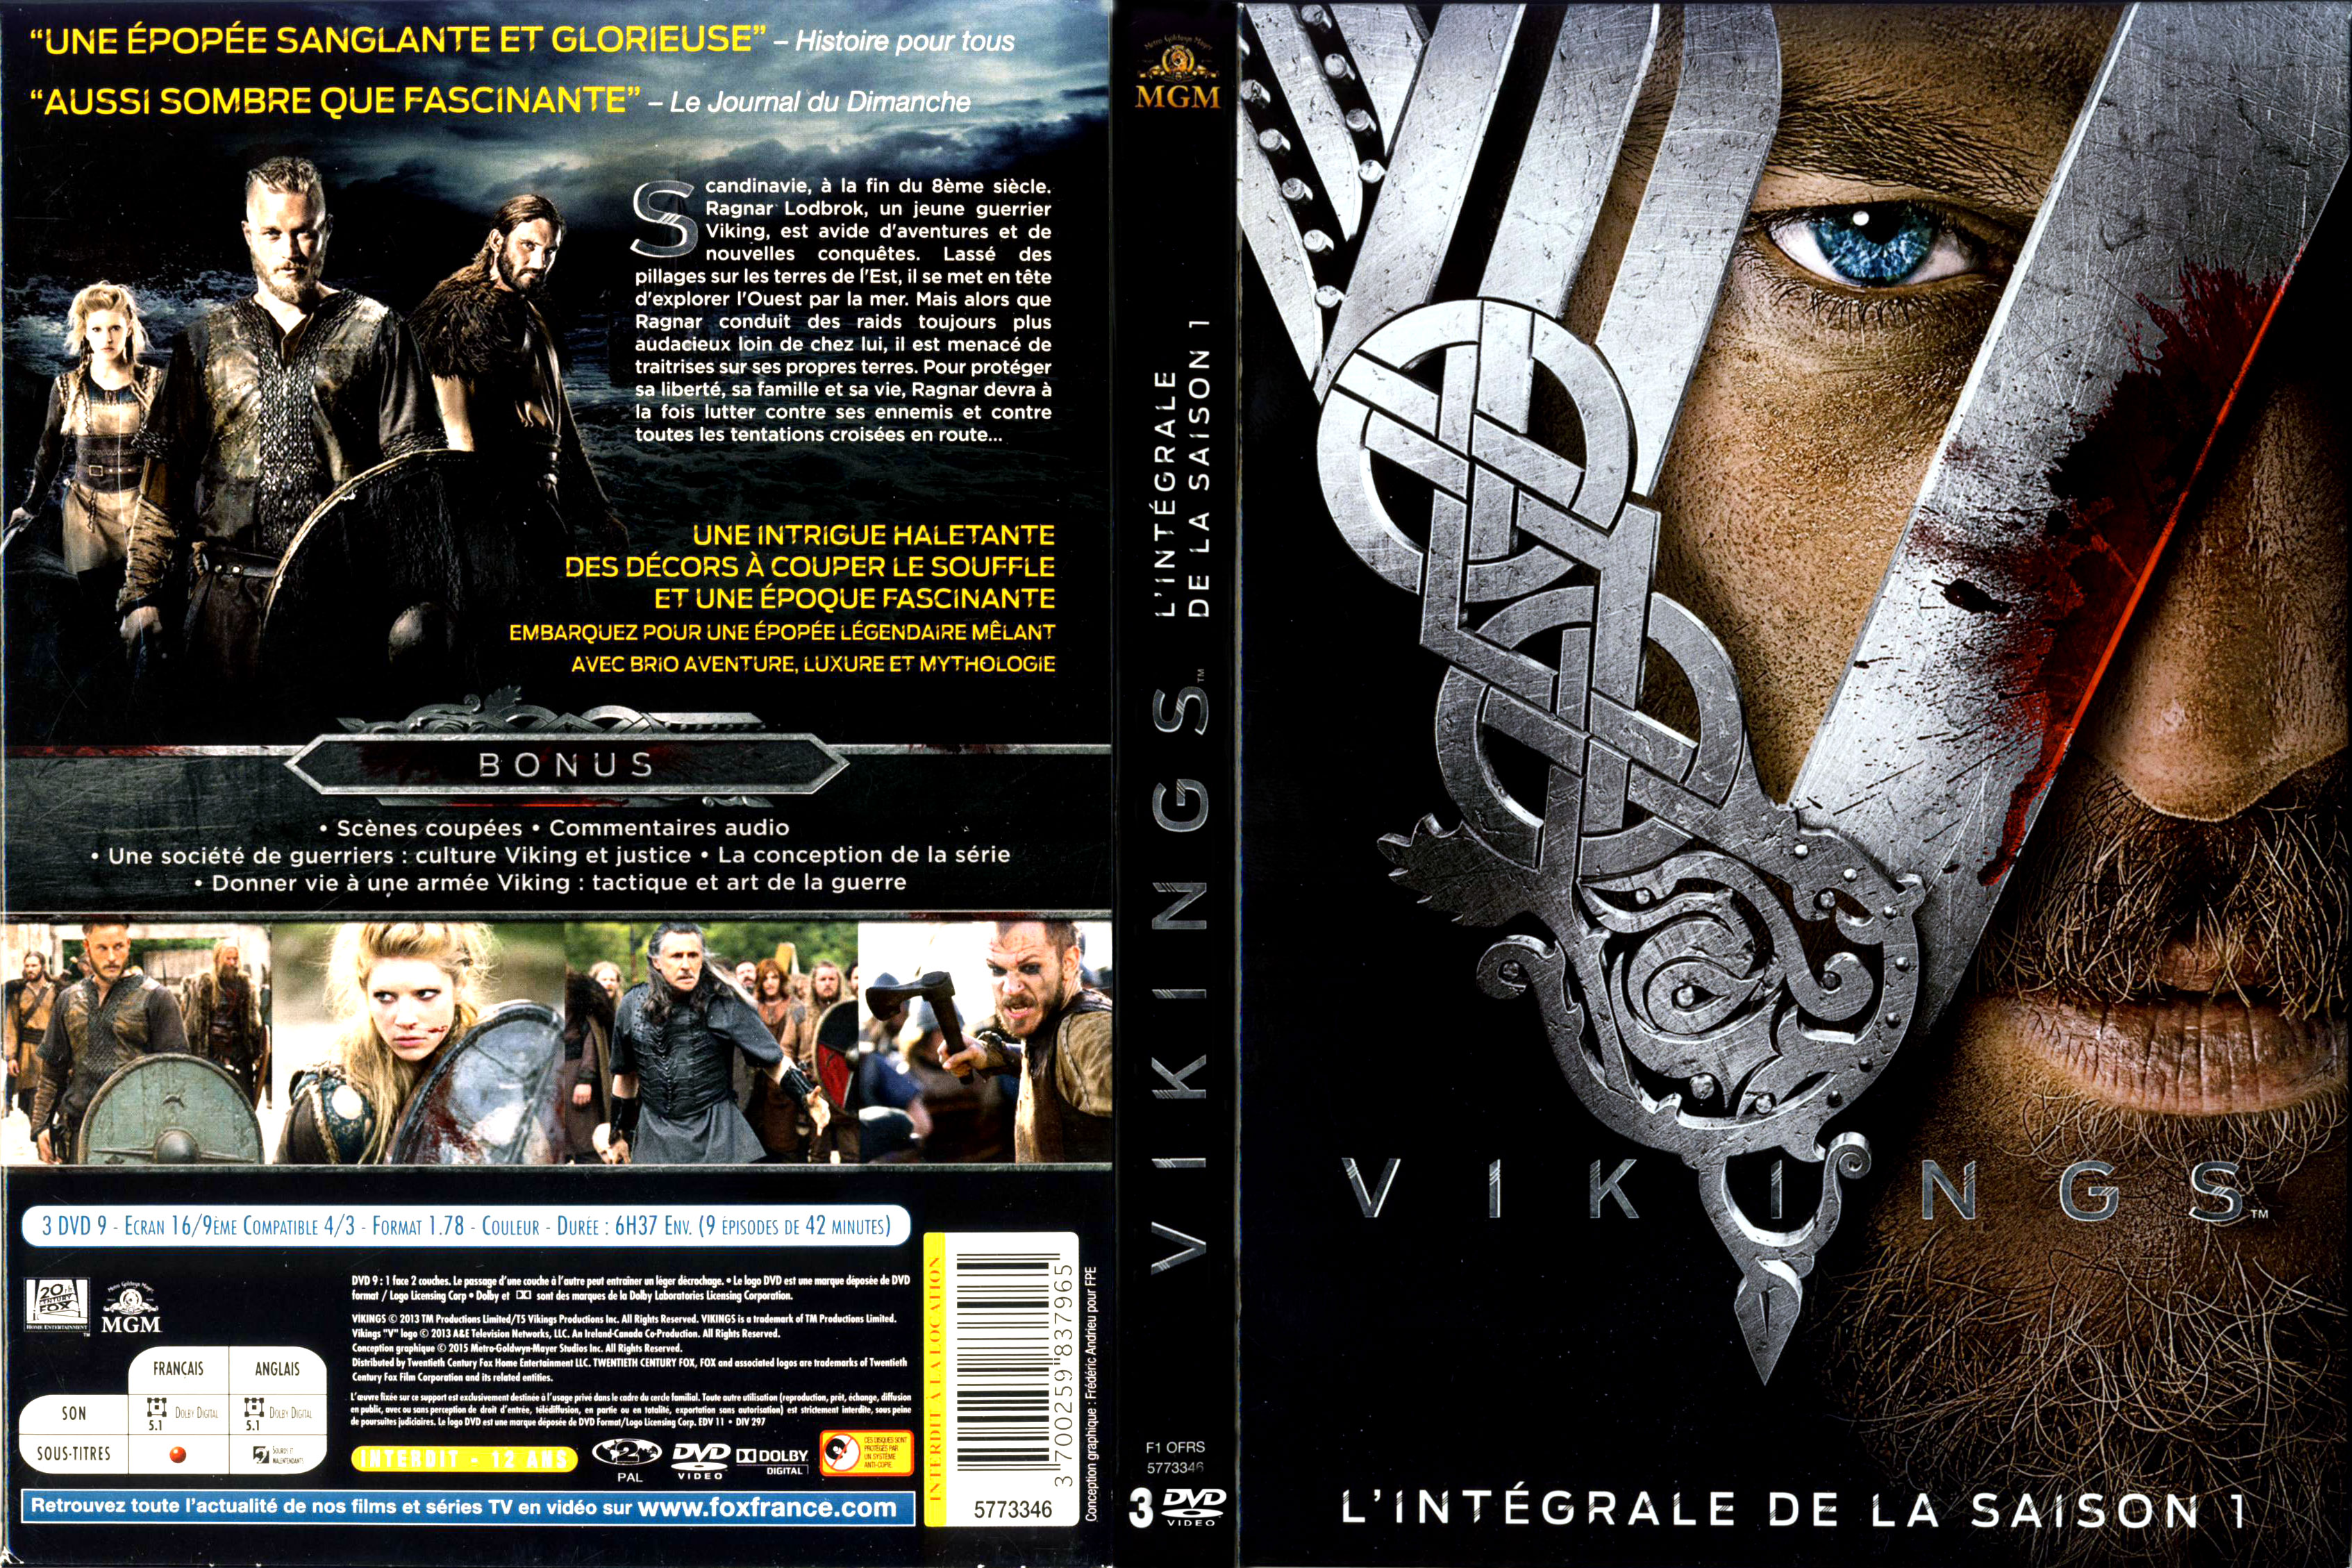 Jaquette DVD de Loki Saison 1 custom - Cinéma Passion